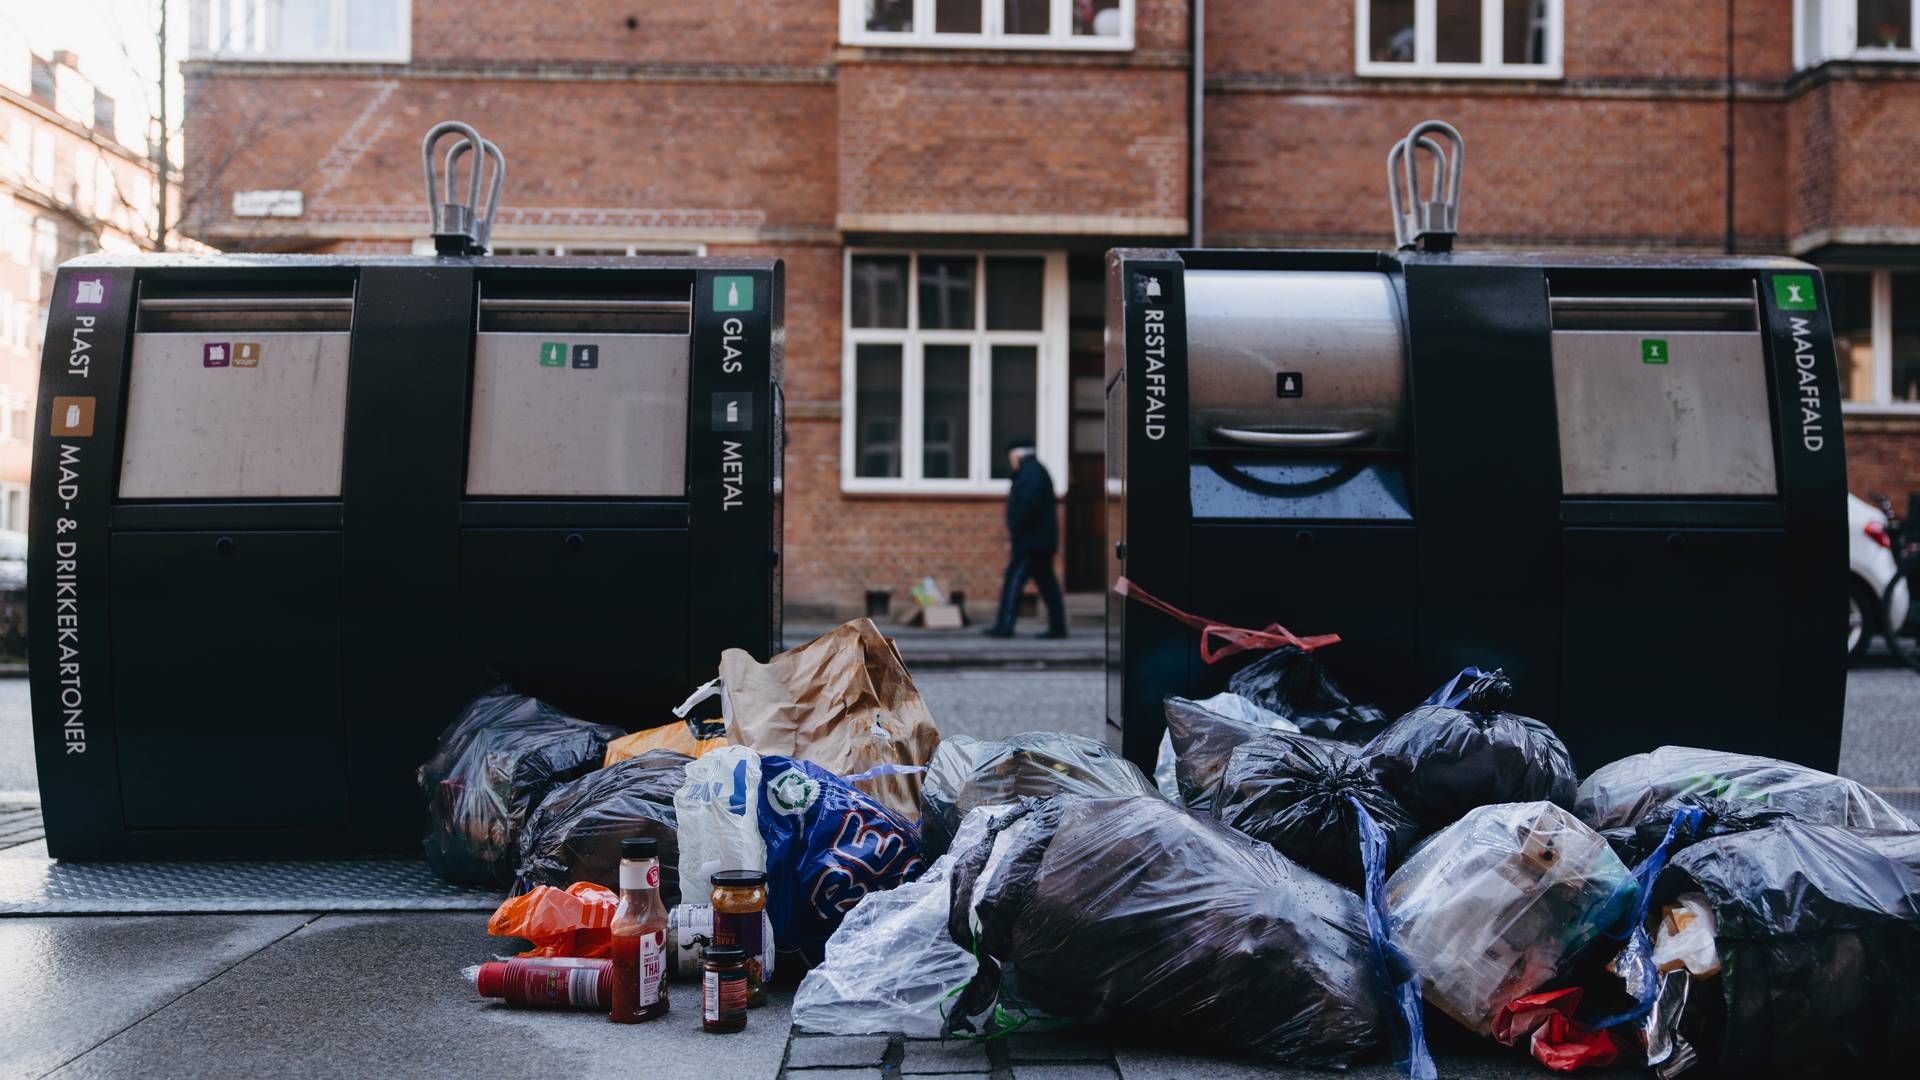 Henkastet affald er et problem, som affaldsselskabet Kredsløb vil imødekomme med forbedrede beredskabsplaner. | Foto: Emilie Toldam Futtrup